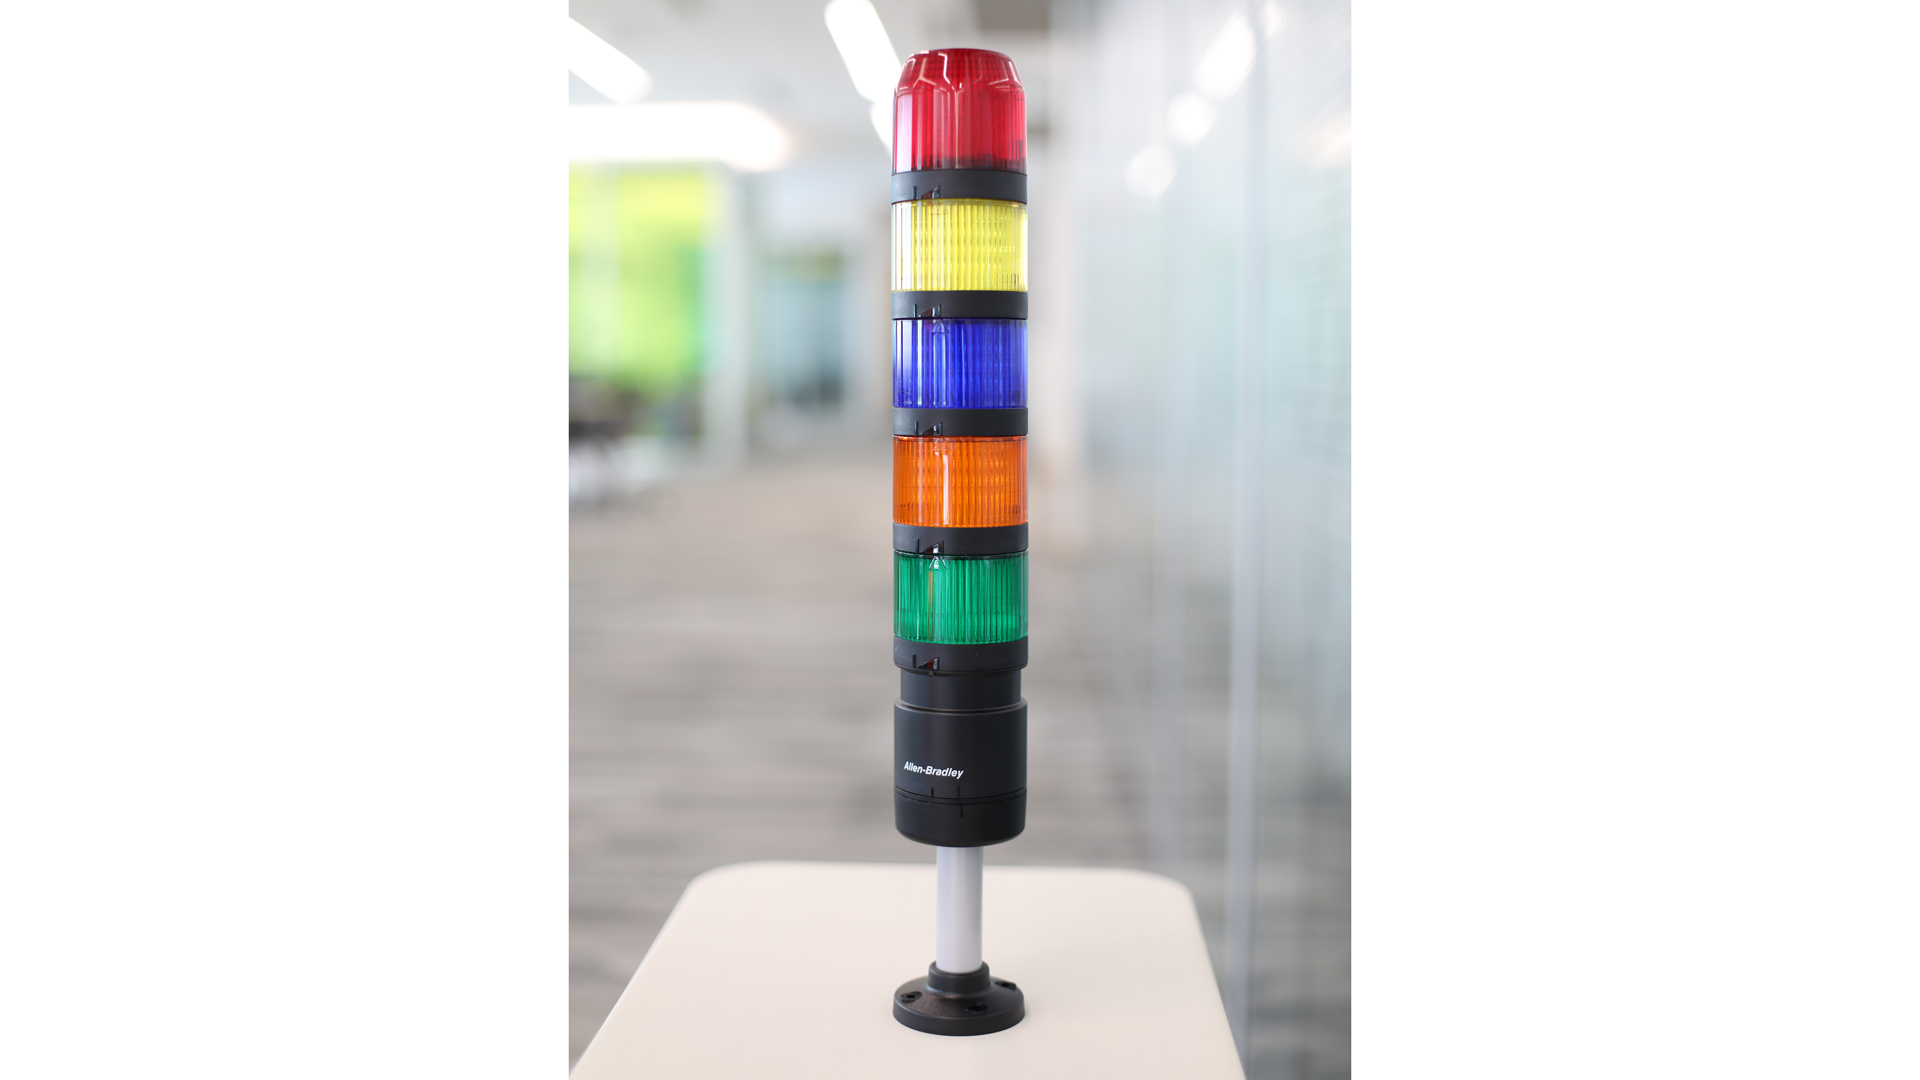 바닥부터 상부까지 테이블의 IO-Link 스택 라이트 - 빨간색, 노란색, 파란색, 황갈색, 녹색(조명 없는 모듈), 검은색 극 장착 